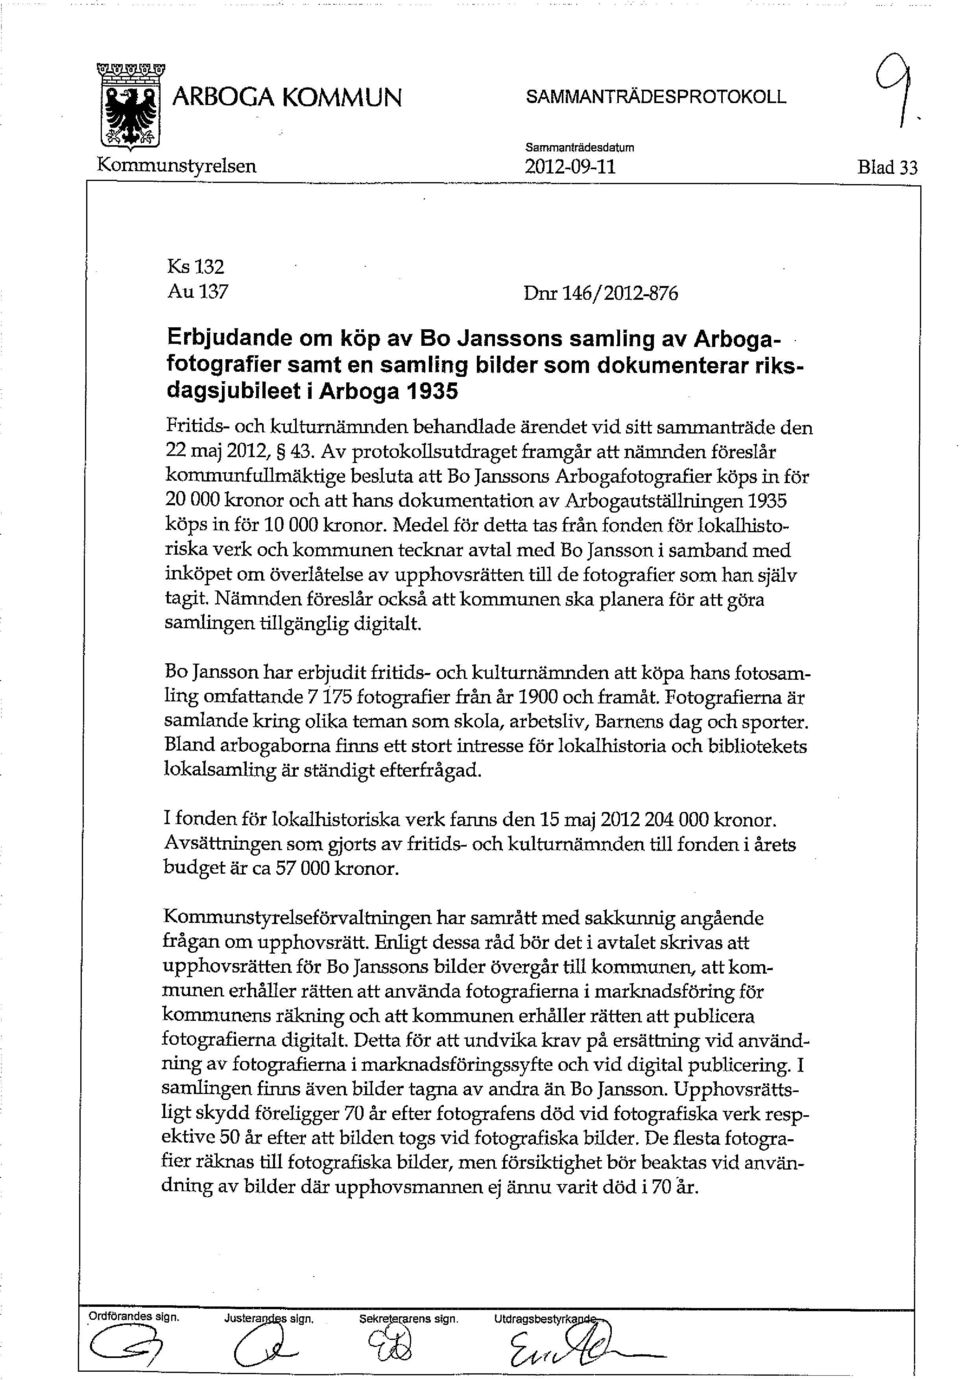 Av protokollsutdraget framgår att nämnden föreslår kommunfullmäktige besluta att Bo Janssons Arbogafotografier köps in för 20 000 kronor och att hans dokumentation av Arbogautställningen 1935 köps in